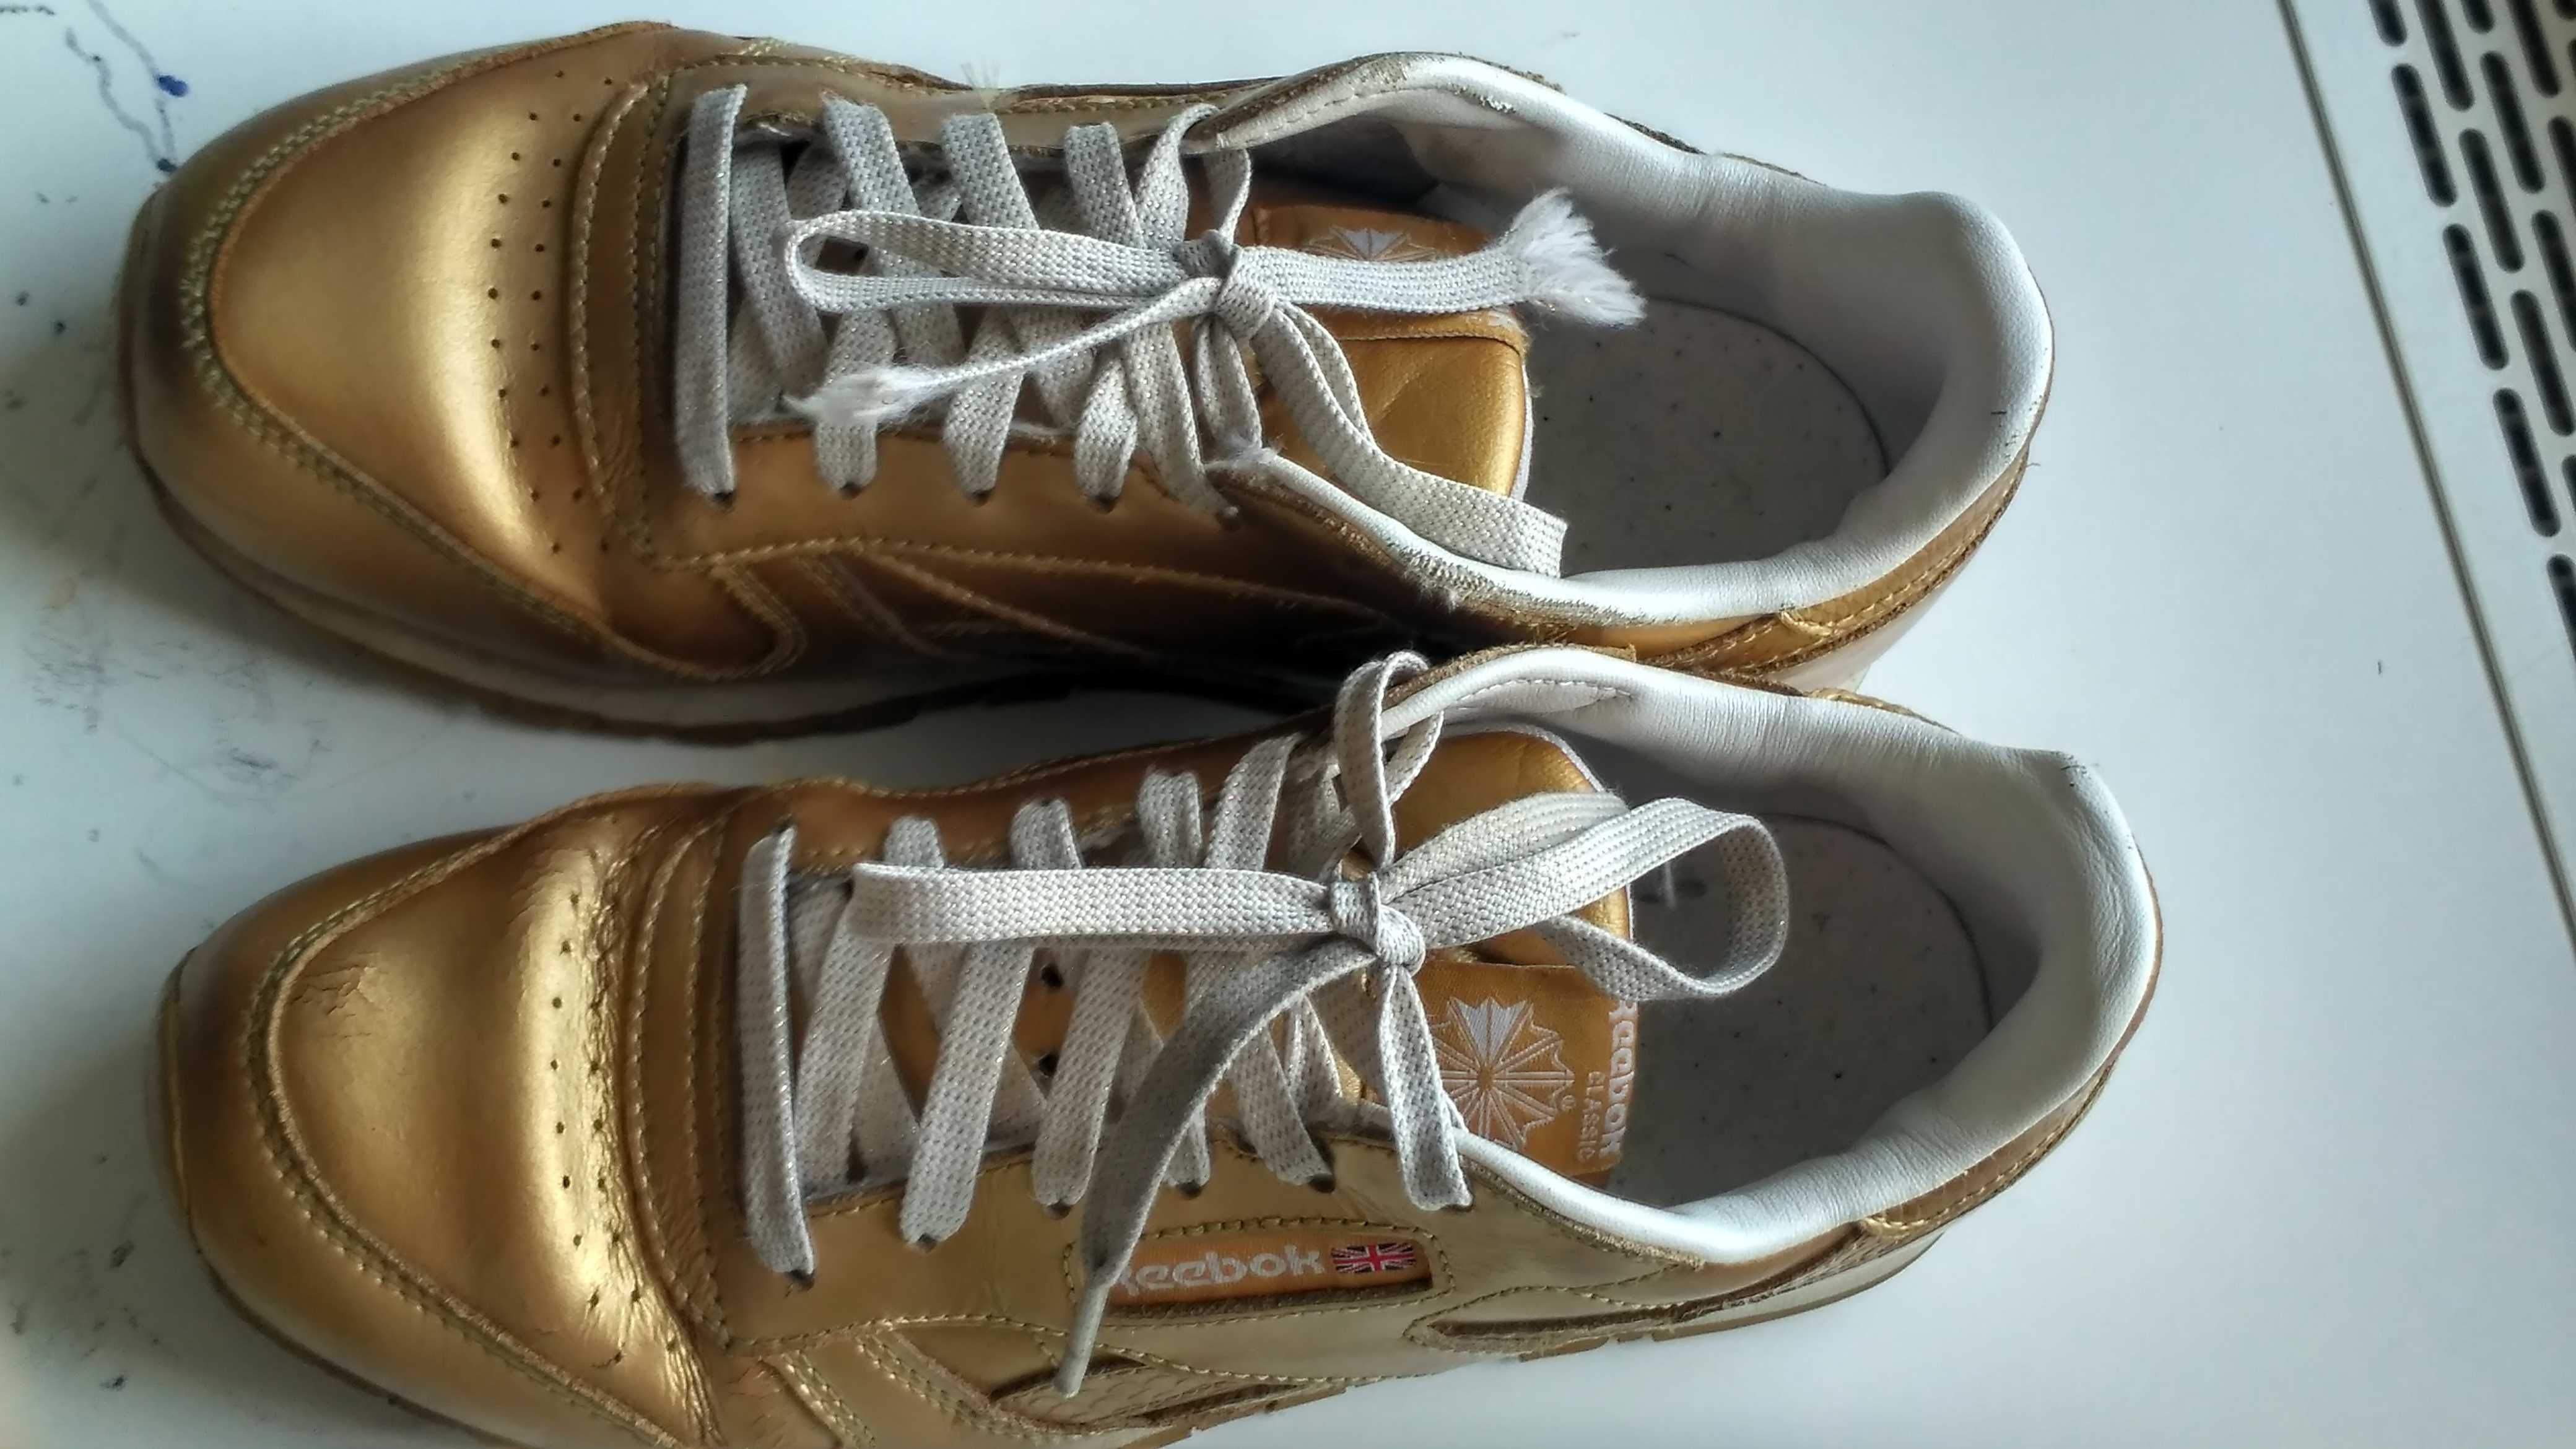 Adidas buty sportowe adidasy złote r. 36